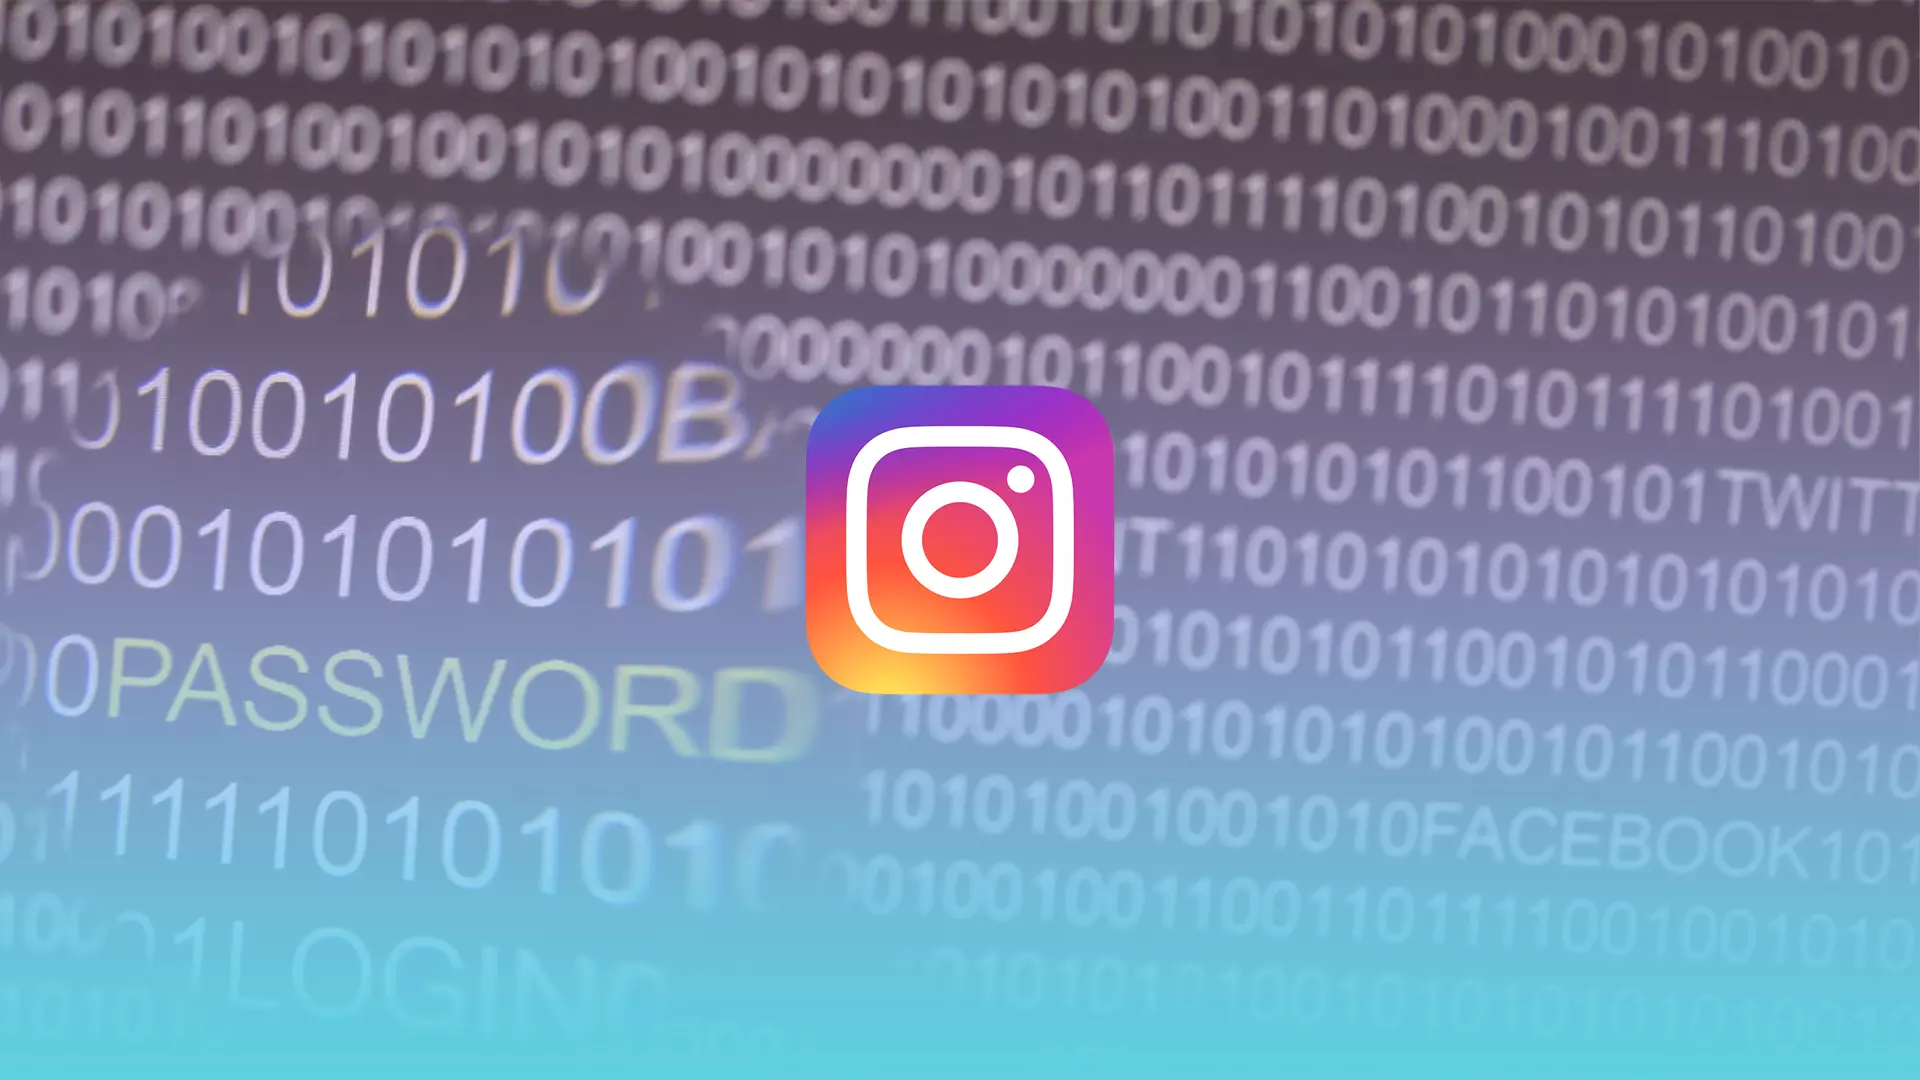 How to reset a forgotten Instagram password